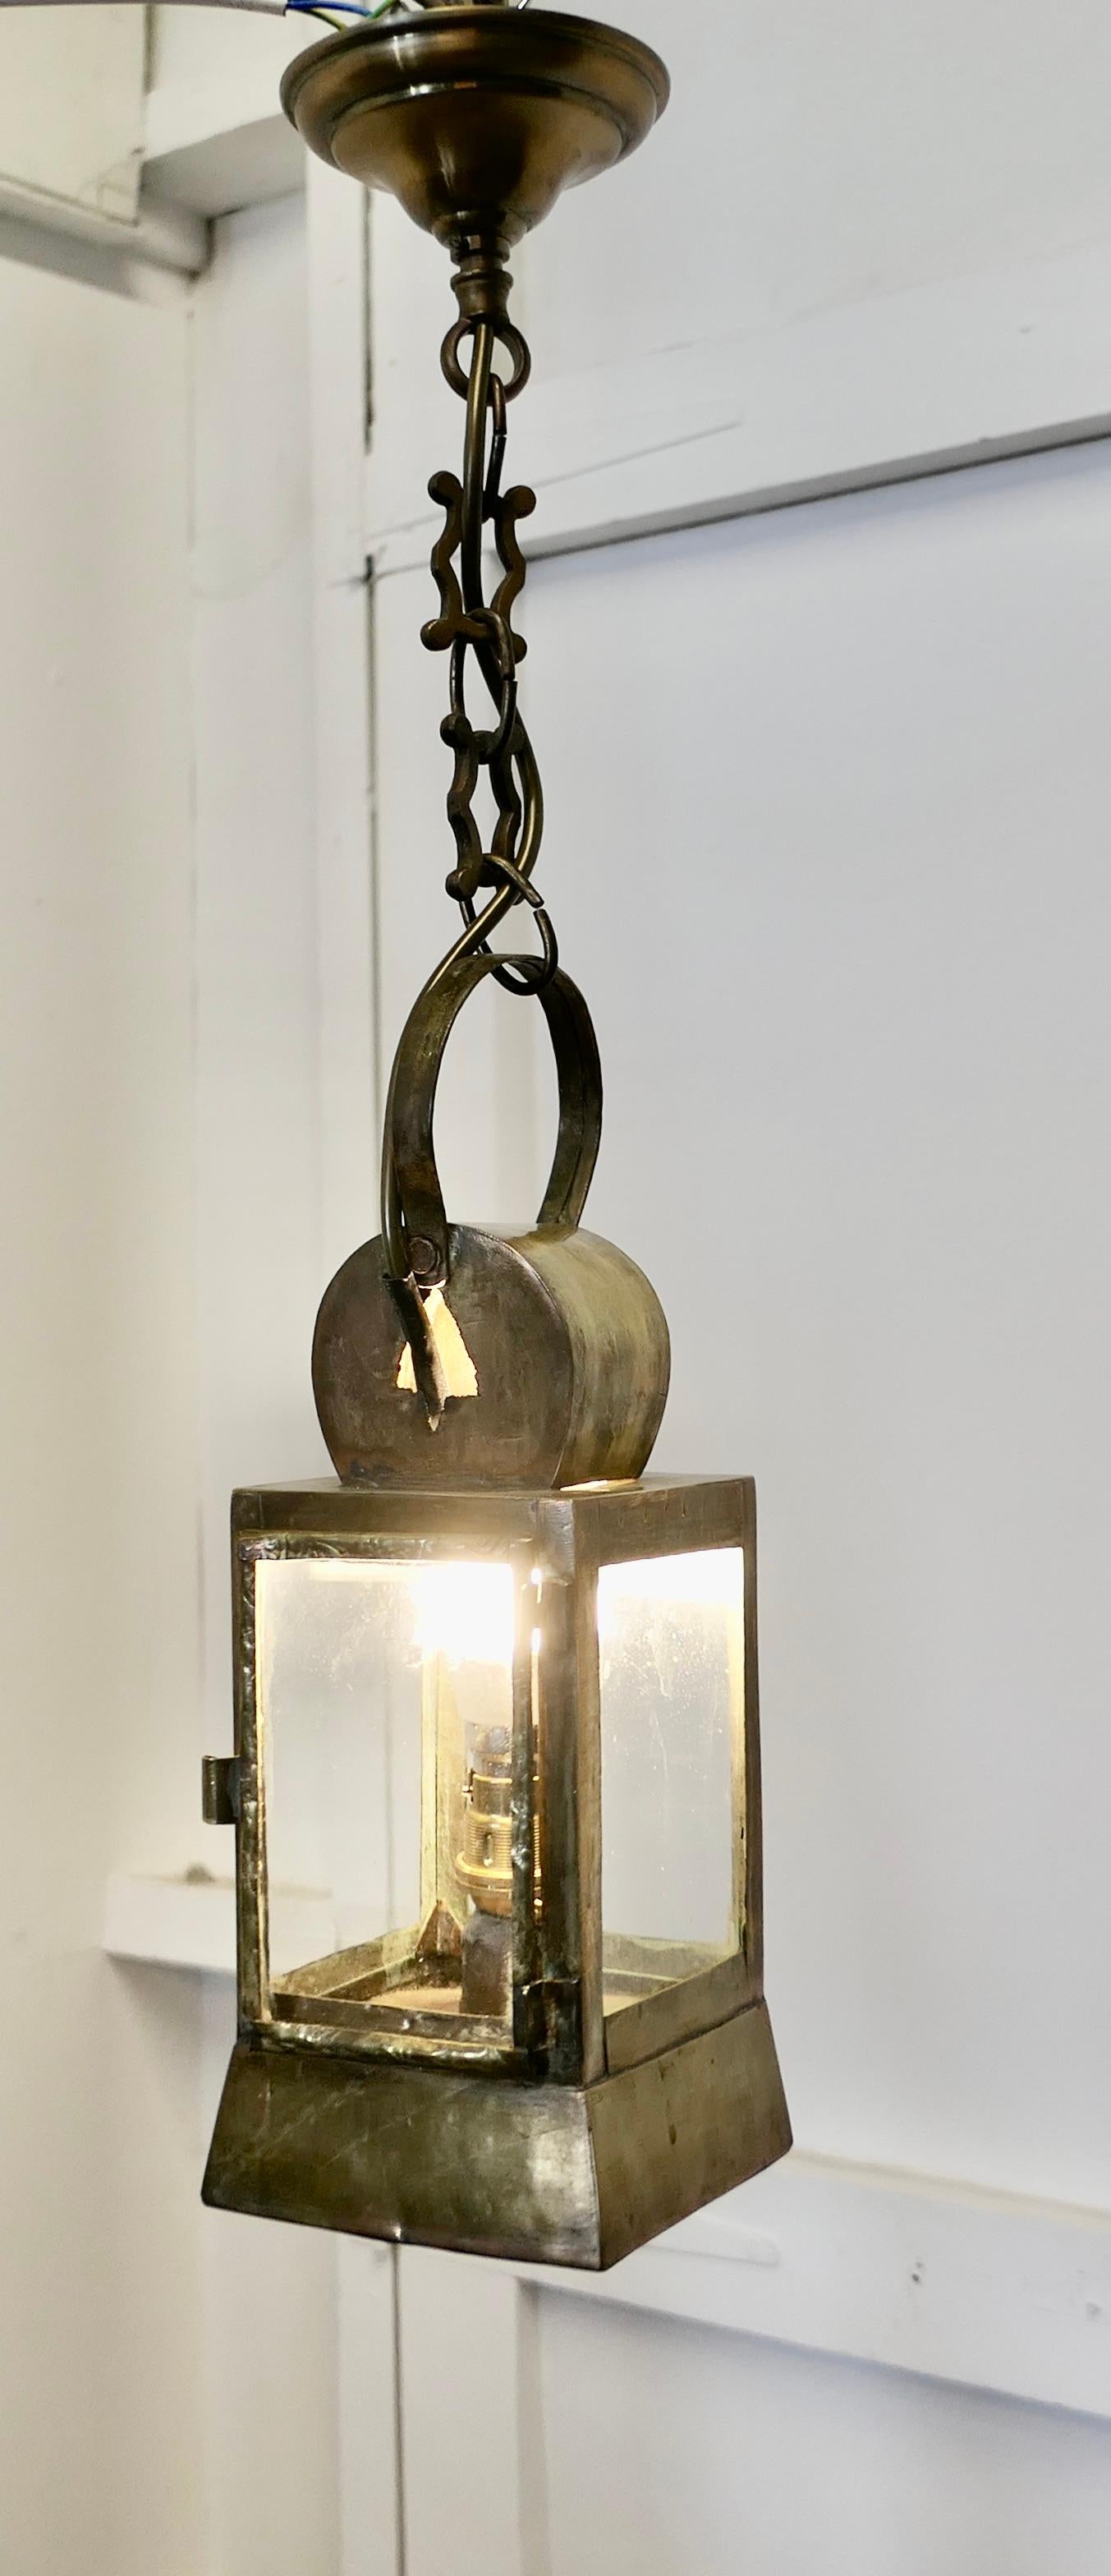 Französische Nachtwächterlaterne aus Messing

Dies ist ein schönes Stück, ursprünglich eine Öllampe, hat es ein neues Leben mit dem Zusatz von elektrischen Verdrahtung und eine hängende Kette gegeben
Die Laterne ist quadratisch in Form mit einem